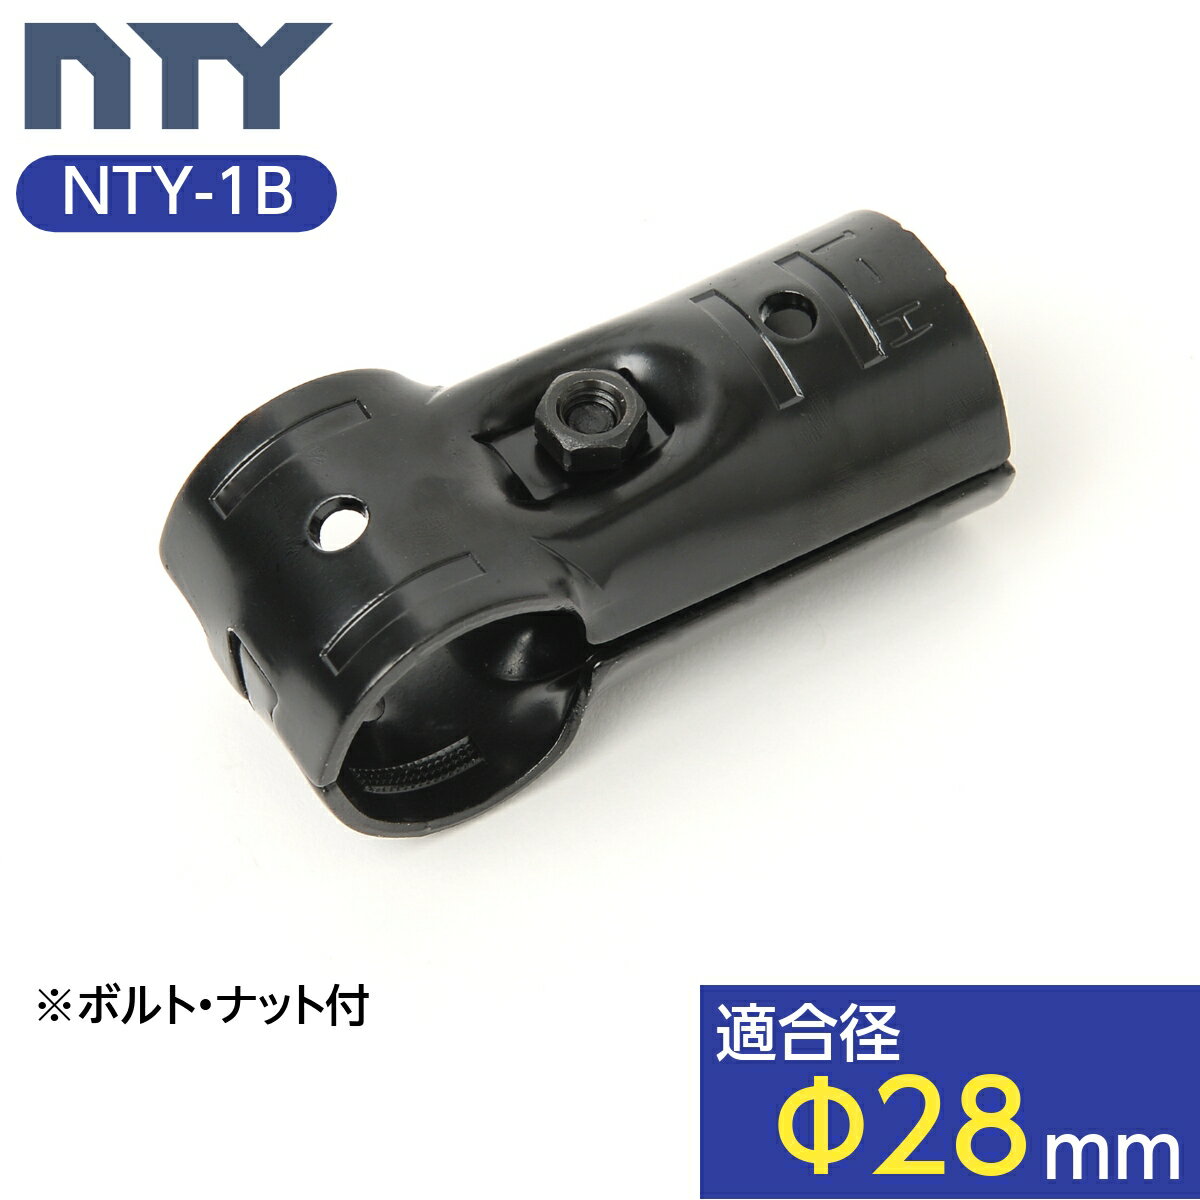 NTY製 メタルジョイント NTY-1B ブラック Φ28mm用 イレクターメタルジョイントのHJ-1と互換性あり 組立て パイプ T字 ジョイント 継手 DIY 棚 中量 軽量 ラック インテリア 収納